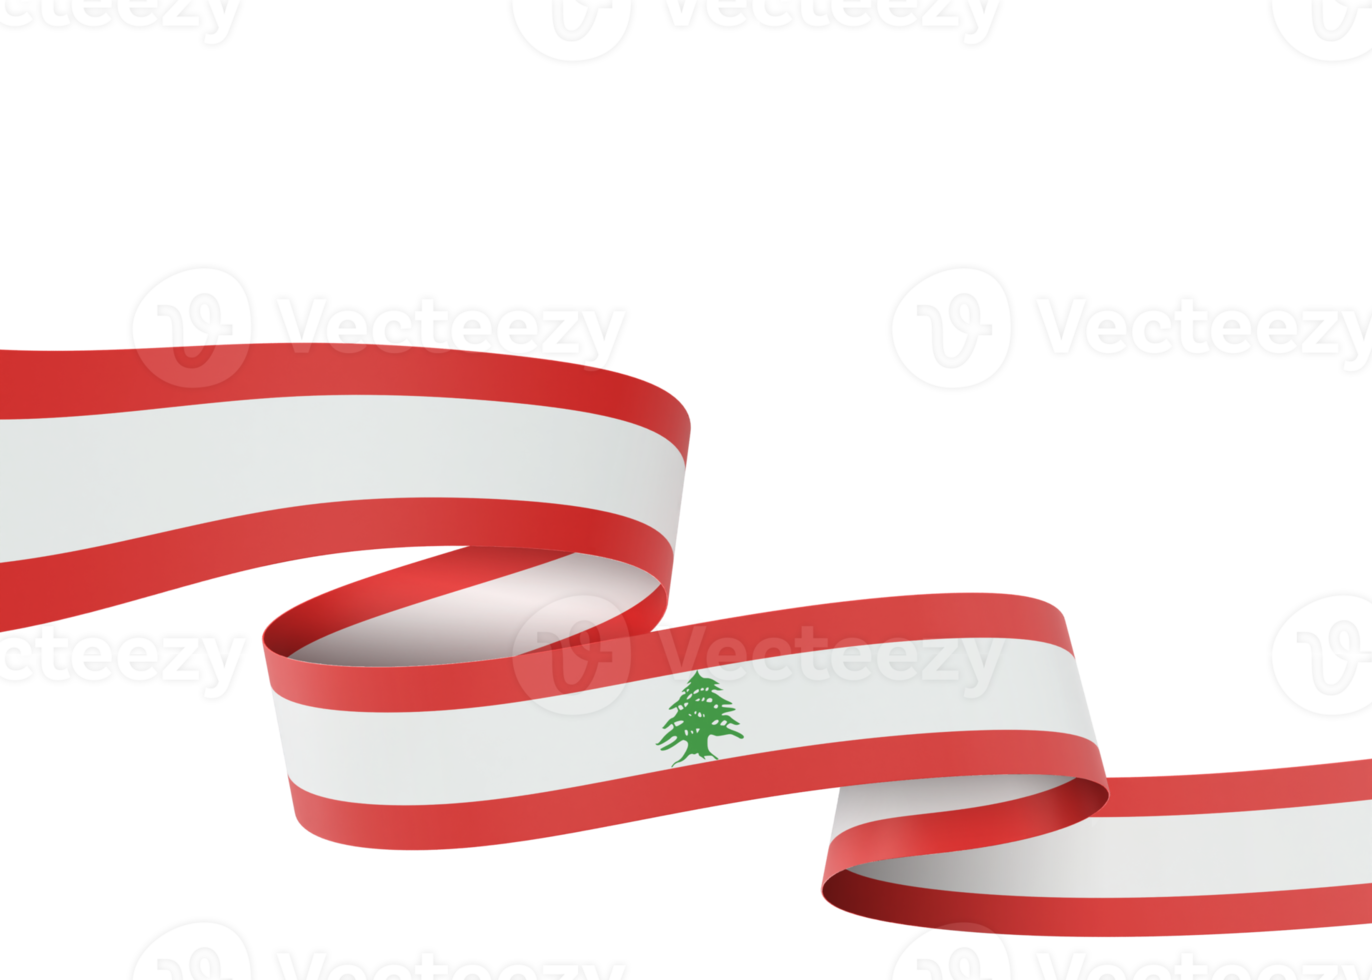 Lebanon flag design national independence day banner element transparent background png